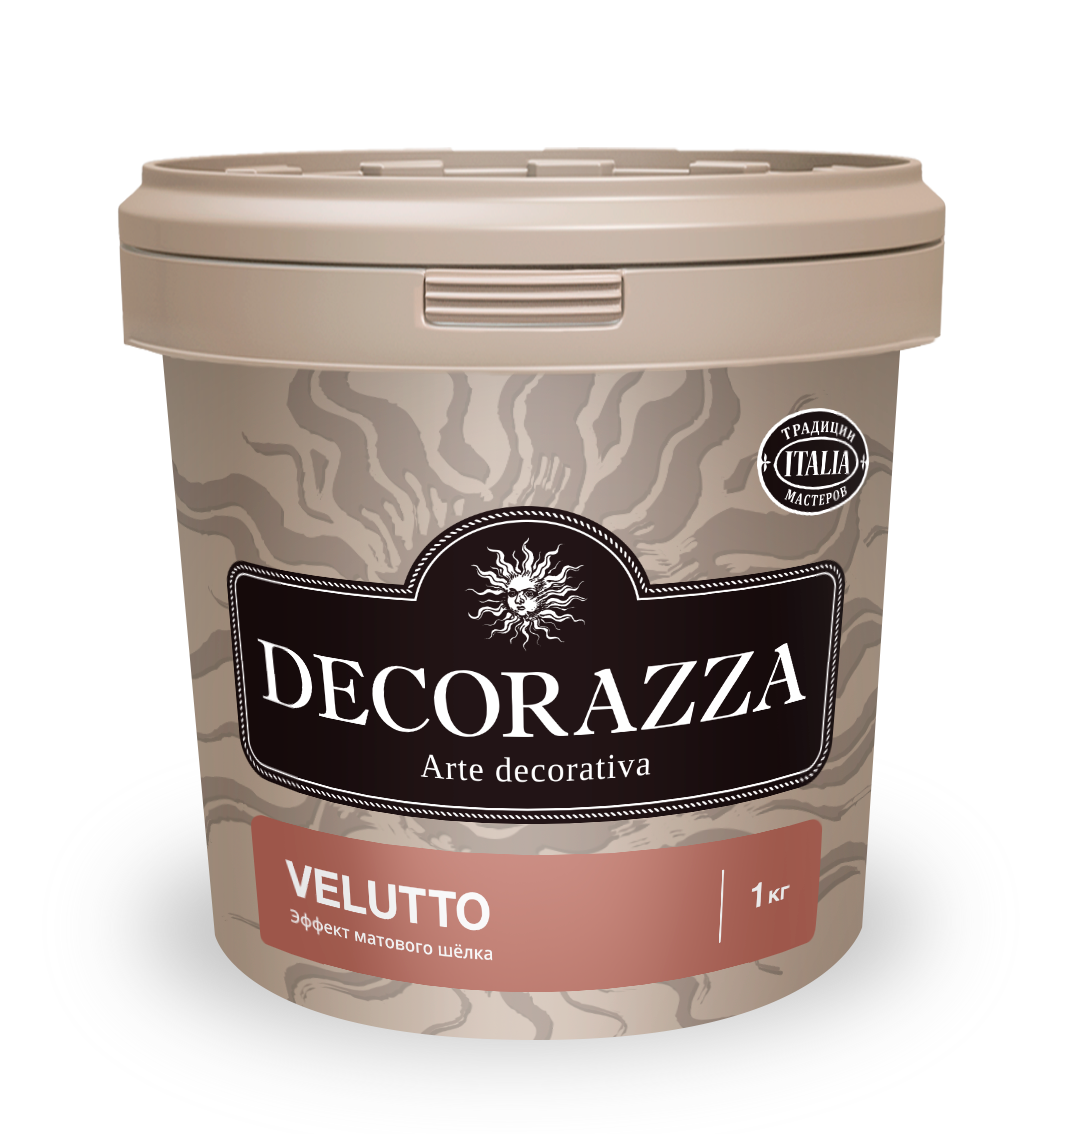 Декоративная штукатурка Decorazza Velluto VT 001, 1 кг